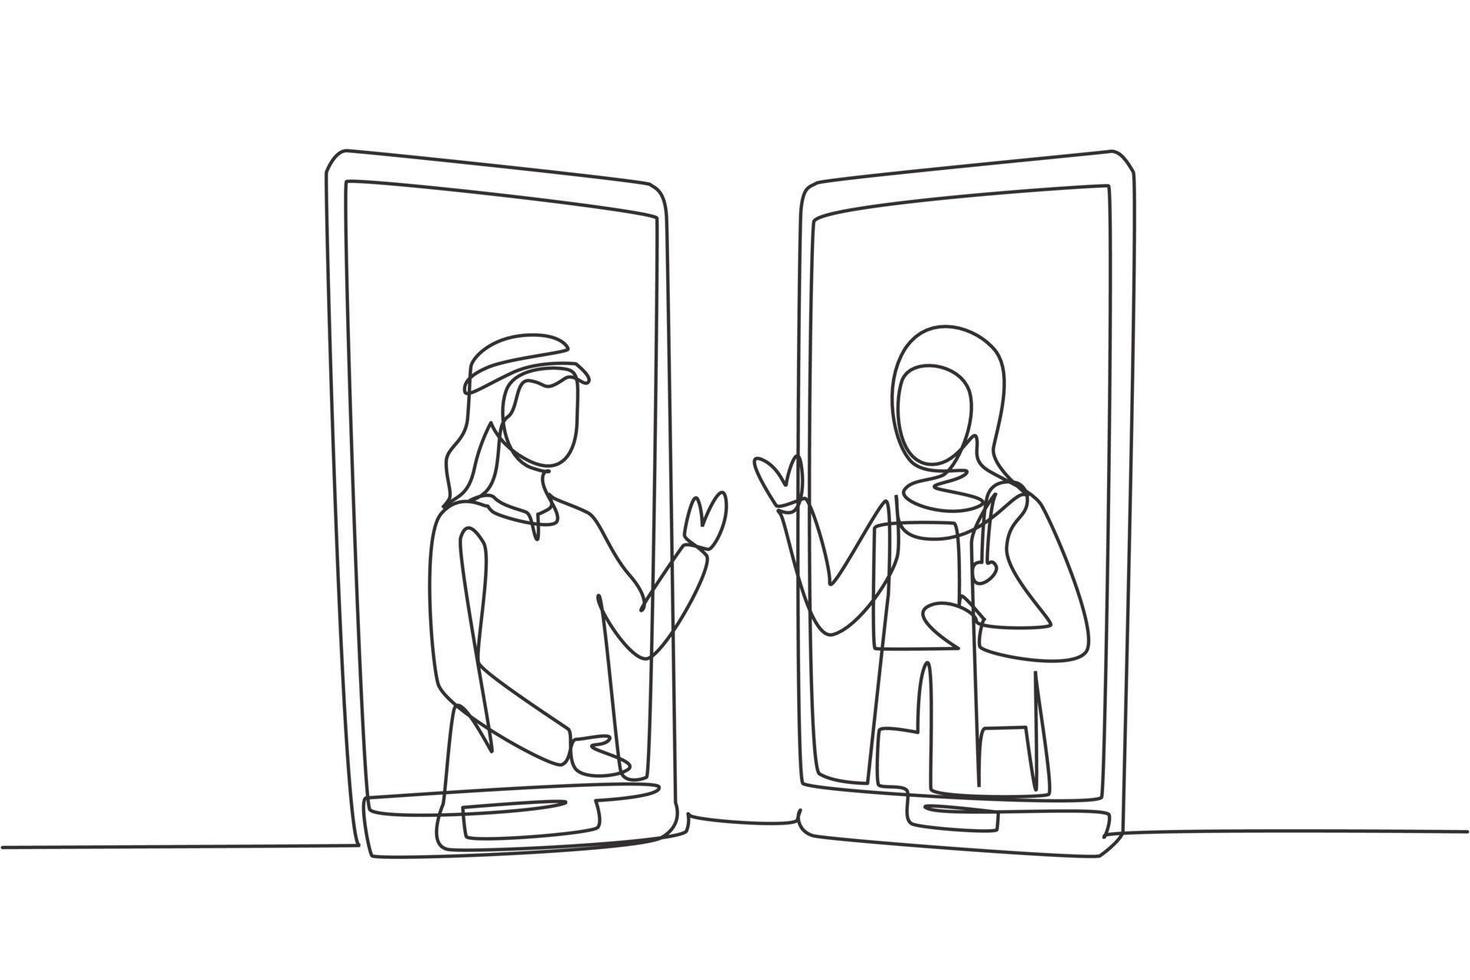 enda kontinuerlig linje som ritar två smartphones ansikte mot ansikte och innehåller arabiska manliga patient och hijab kvinnliga läkare med sina kroppar som om de kommer ut ur smartphone. dynamisk en rad ritning grafisk design vektor